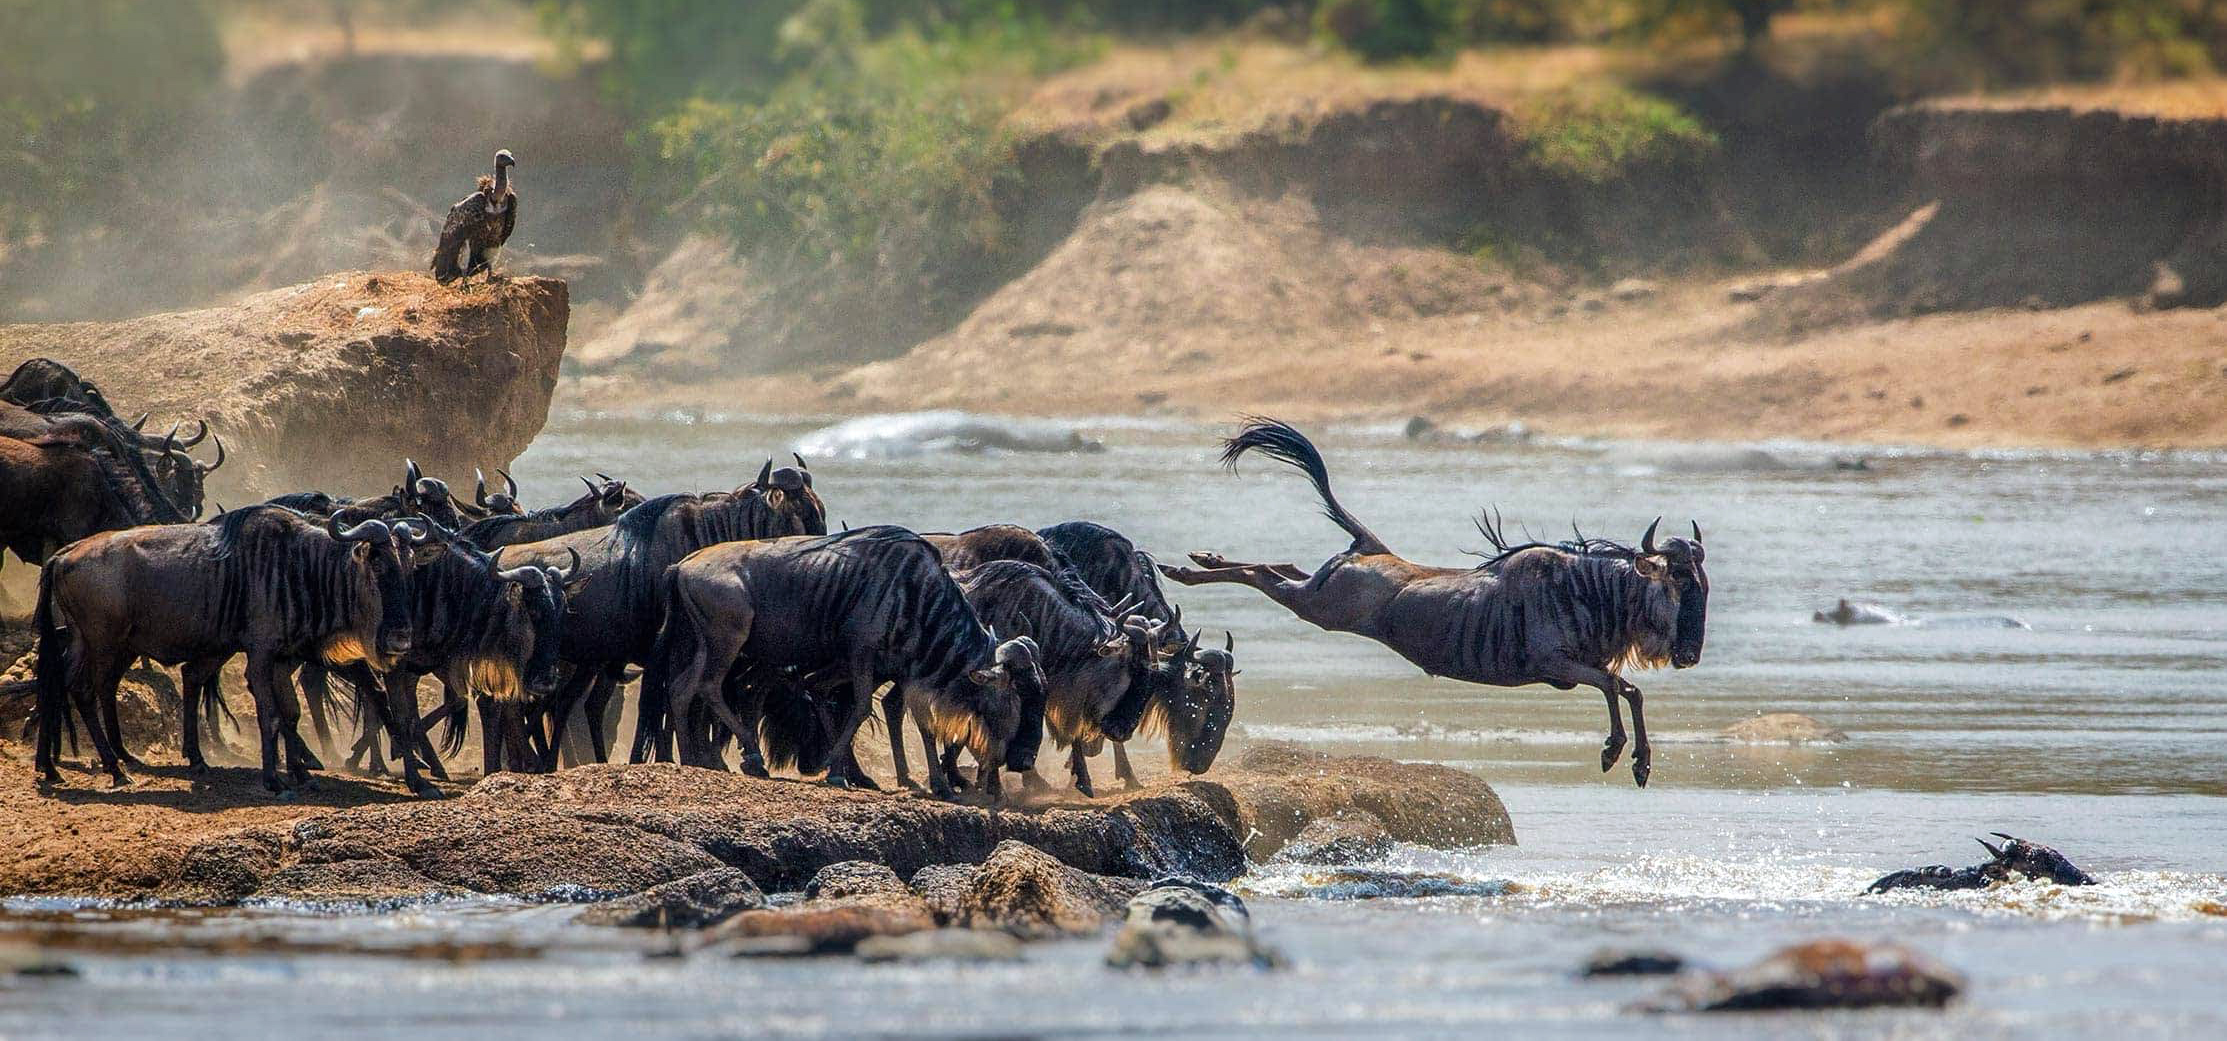 wildebeest migration in-serengeti national park